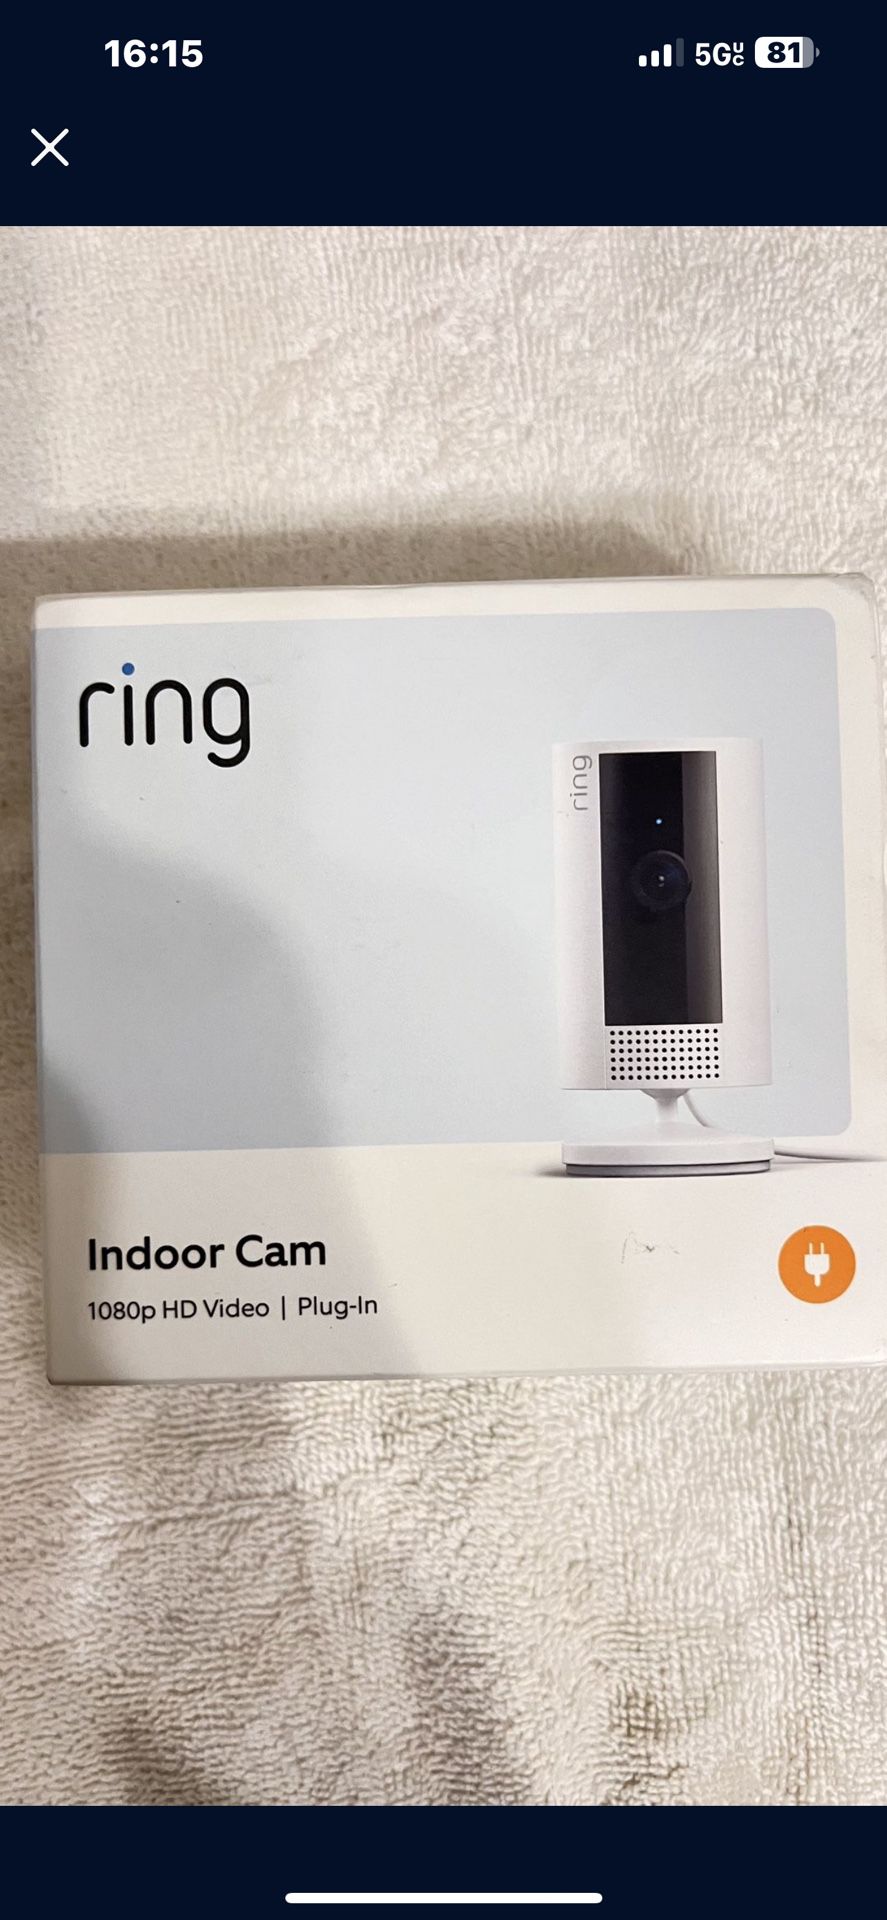 Ring Indoor Cam 